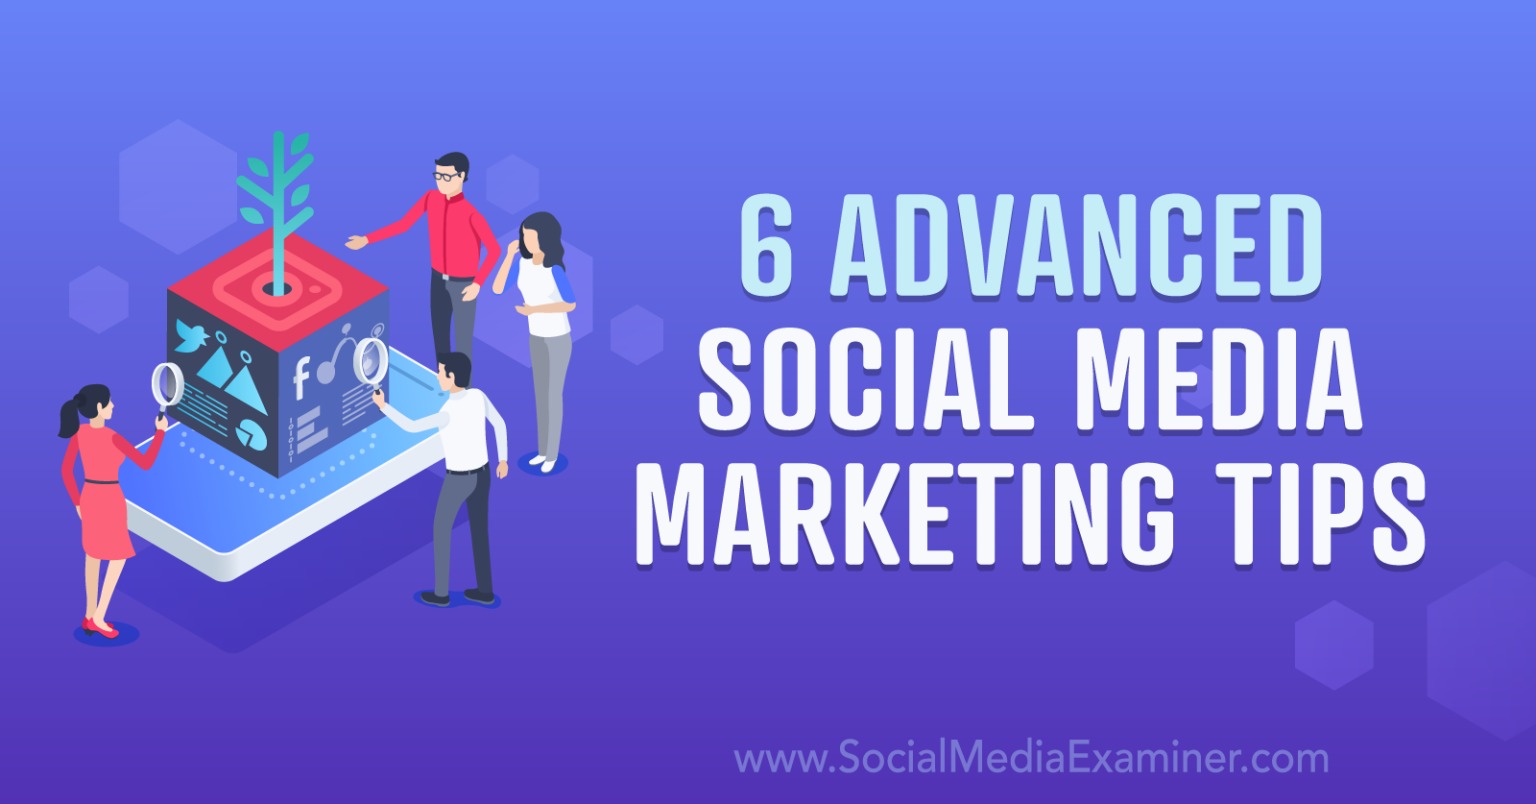 6 Advanced Social Media Marketing Tips